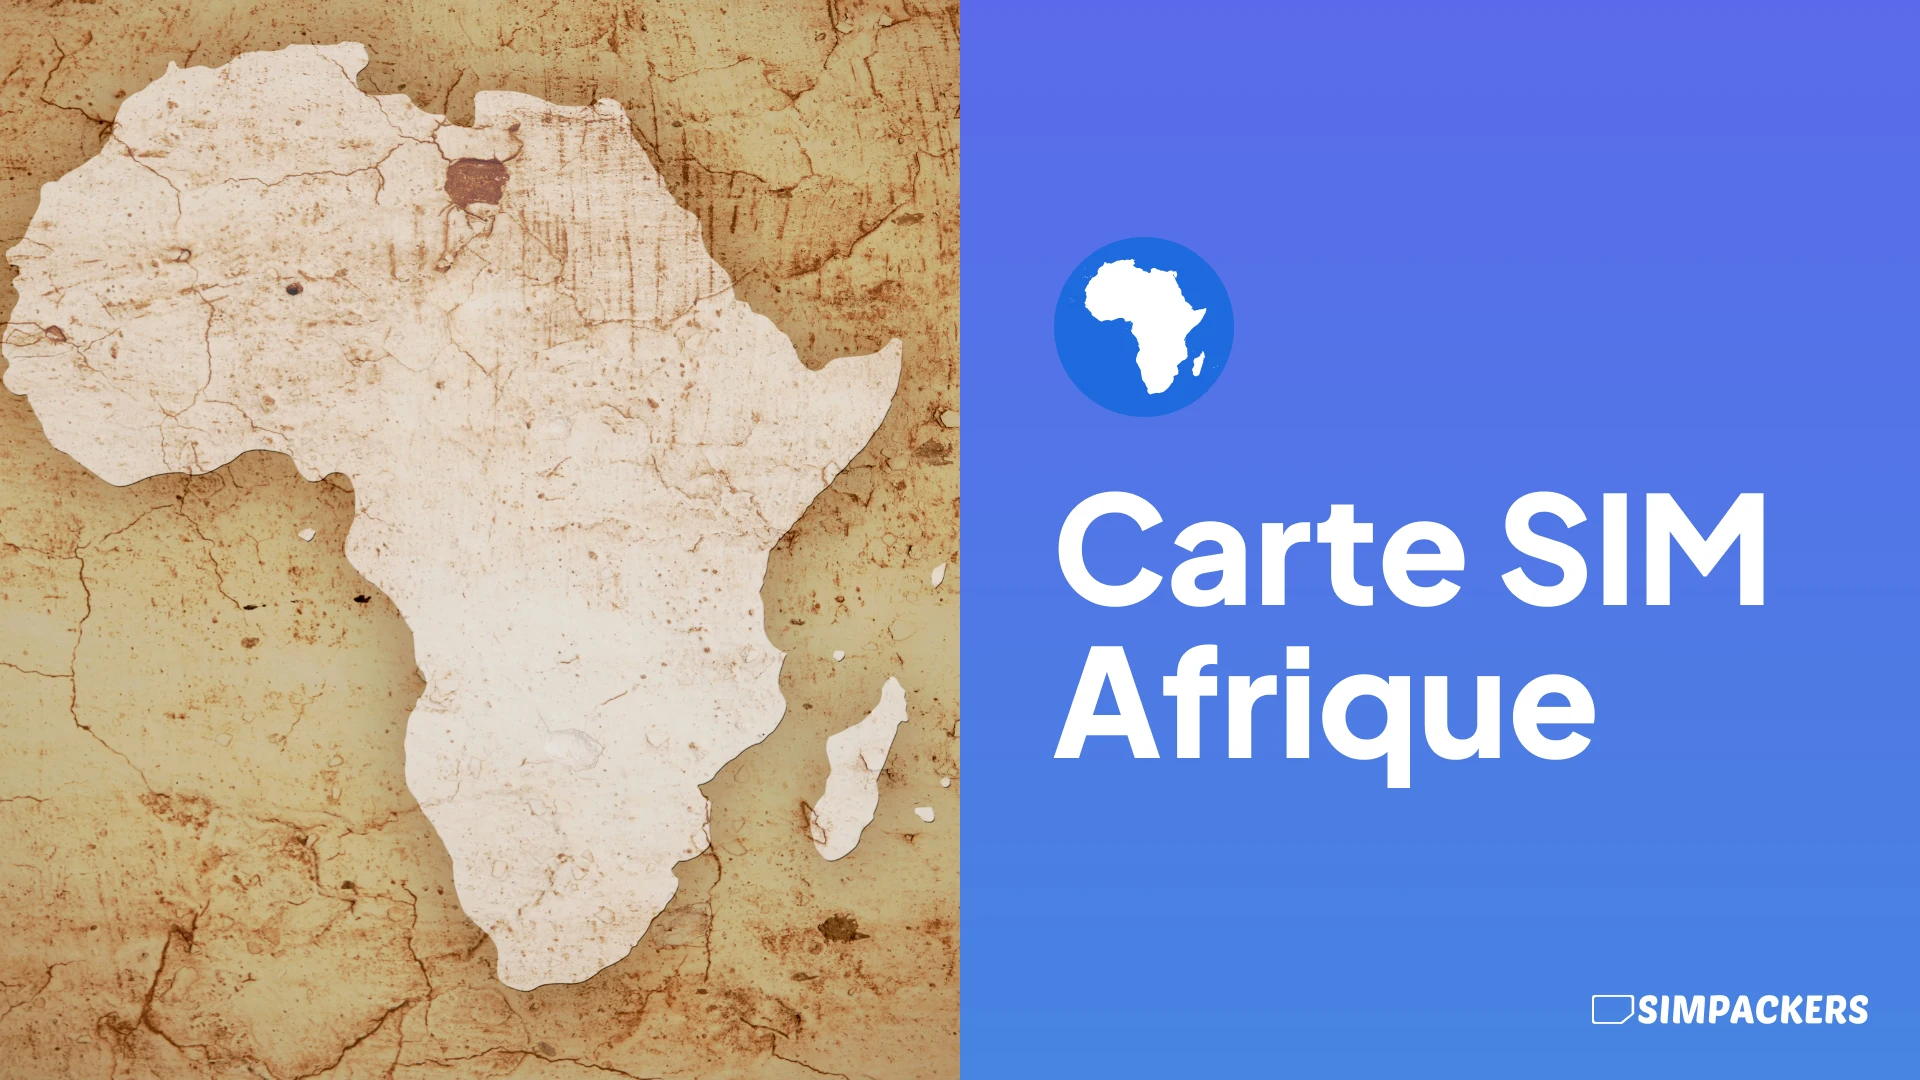 FR/FEATURED_IMAGES/carte-sim-afrique.webp